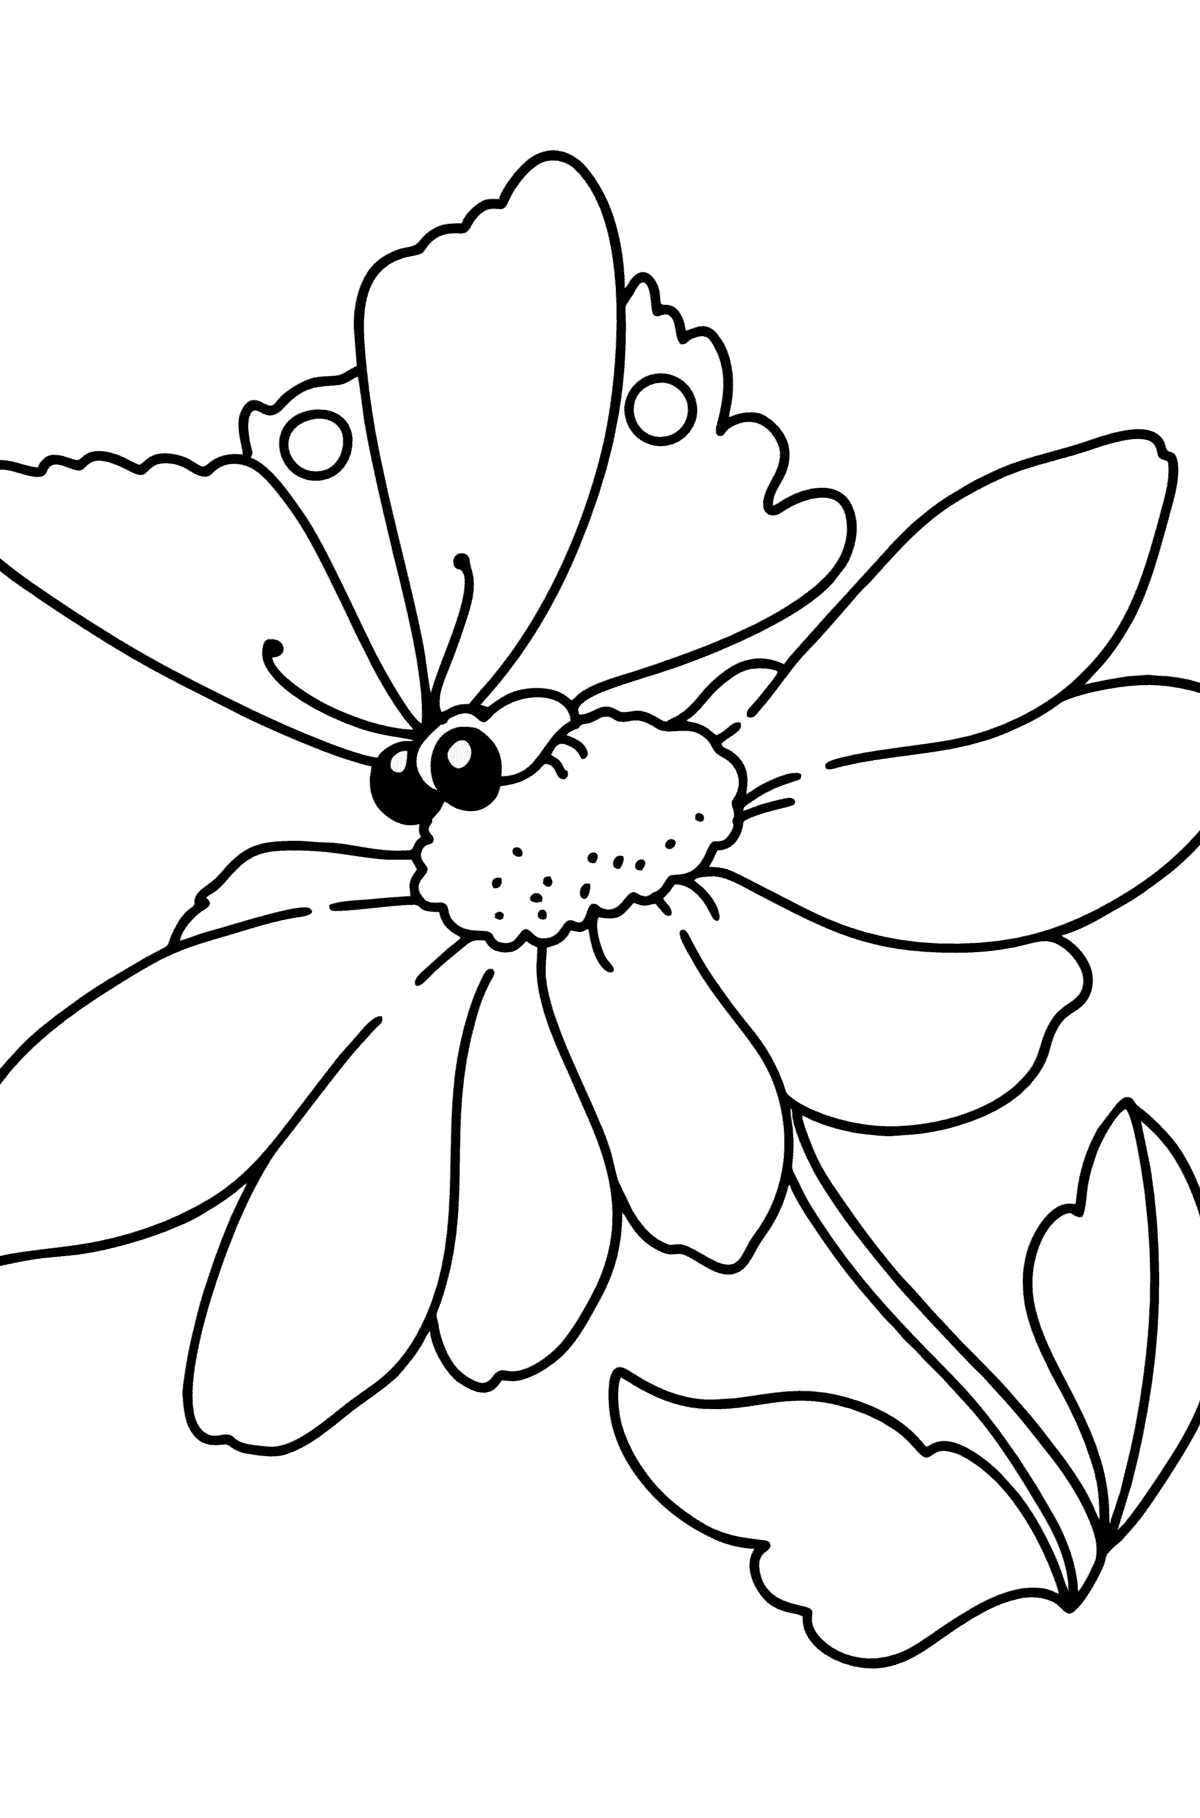 Desenho para colorir verão - flores e borboletas - Imagens para Colorir para Crianças